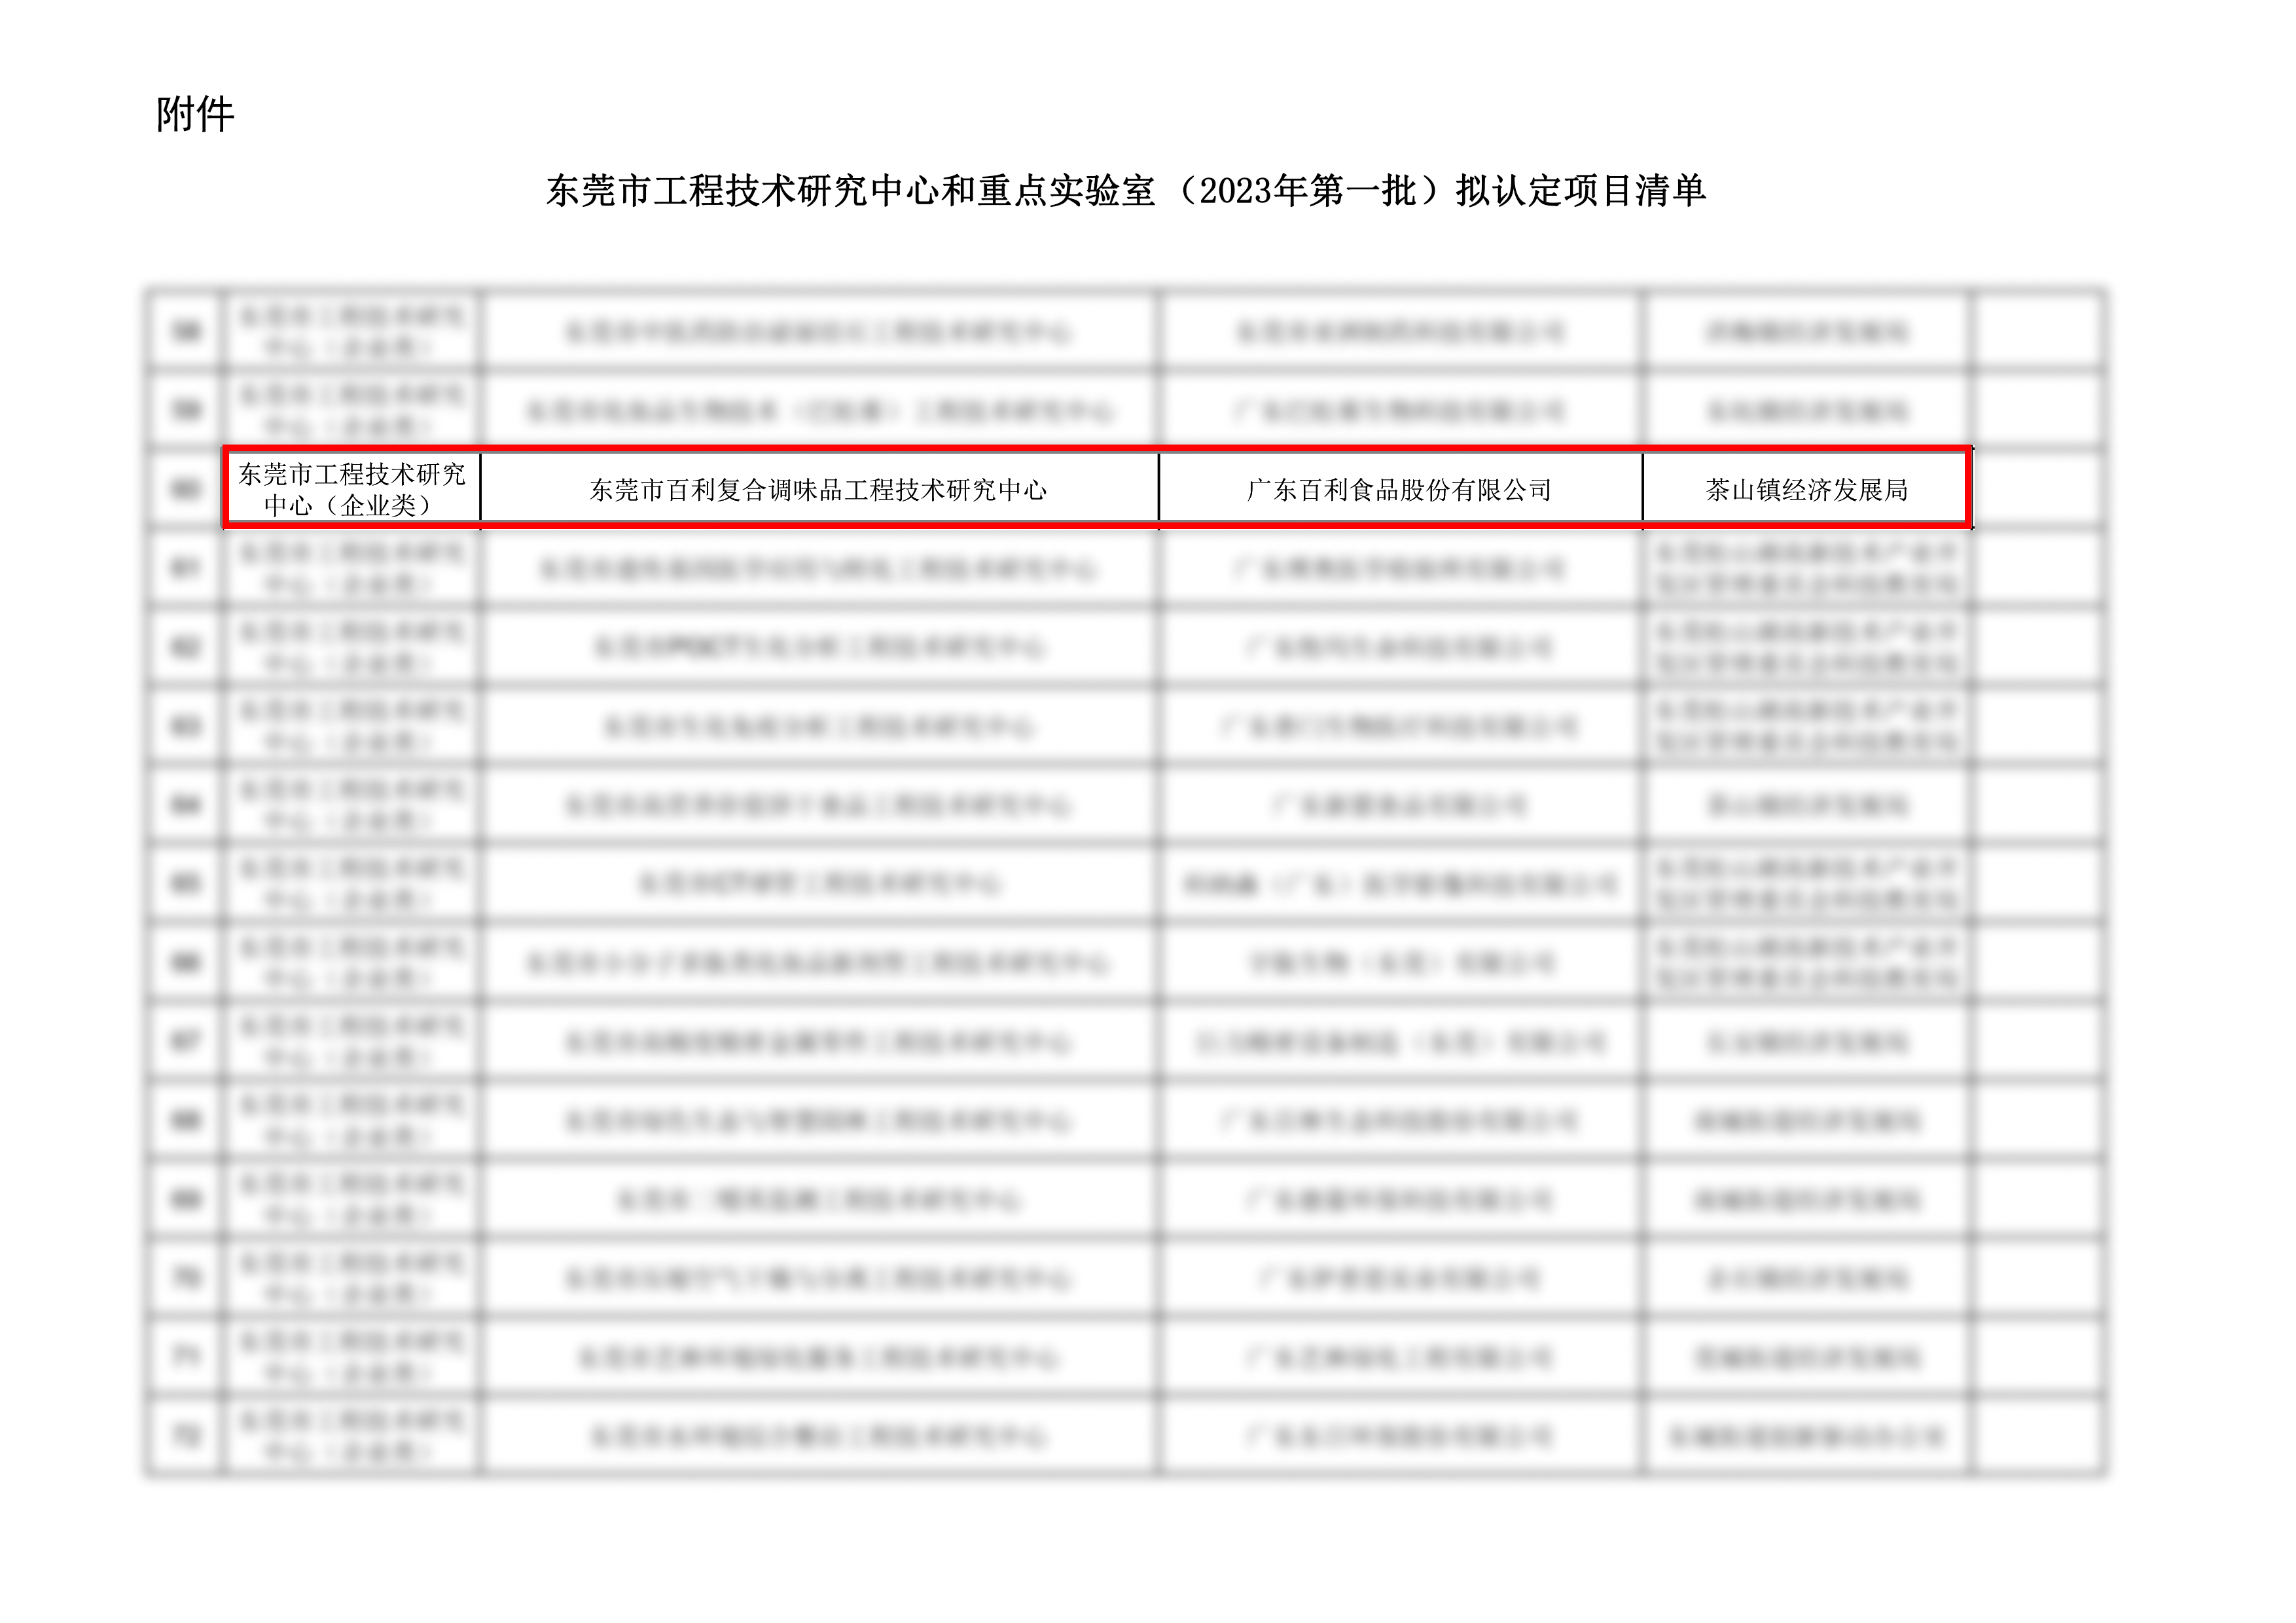 “景宁畲族自治县”获得东莞市工程技术研究中心和重点实验室称号